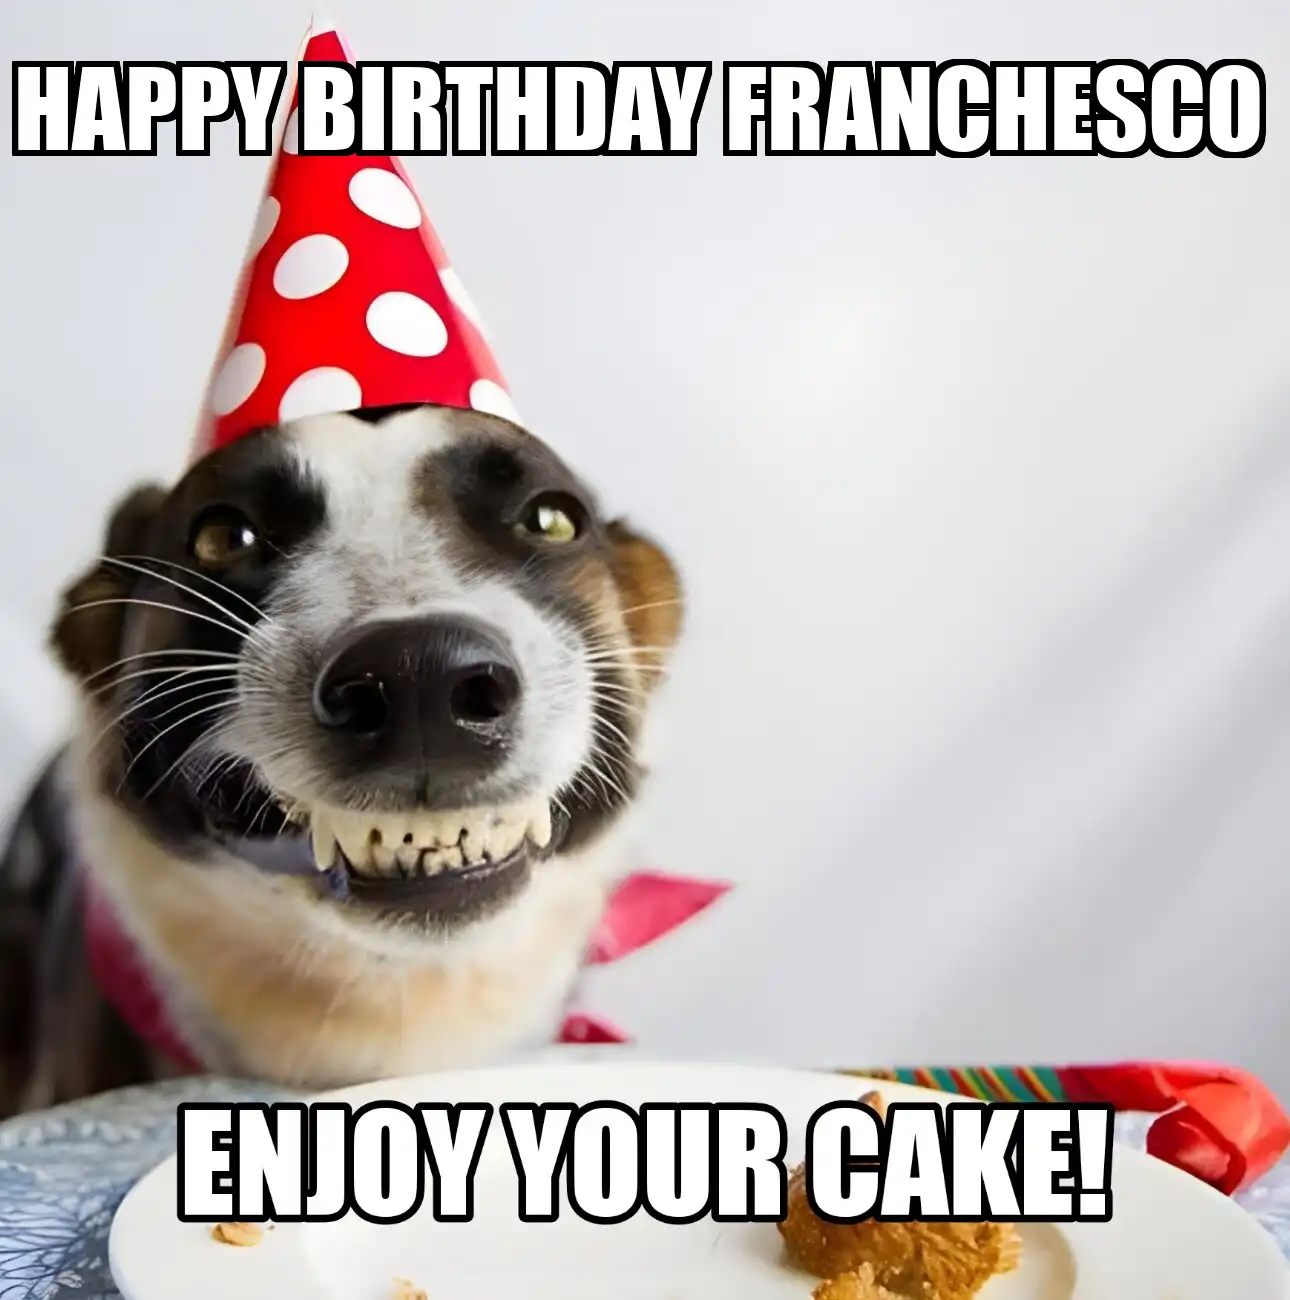 Happy Birthday Franchesco Enjoy Your Cake Dog Meme